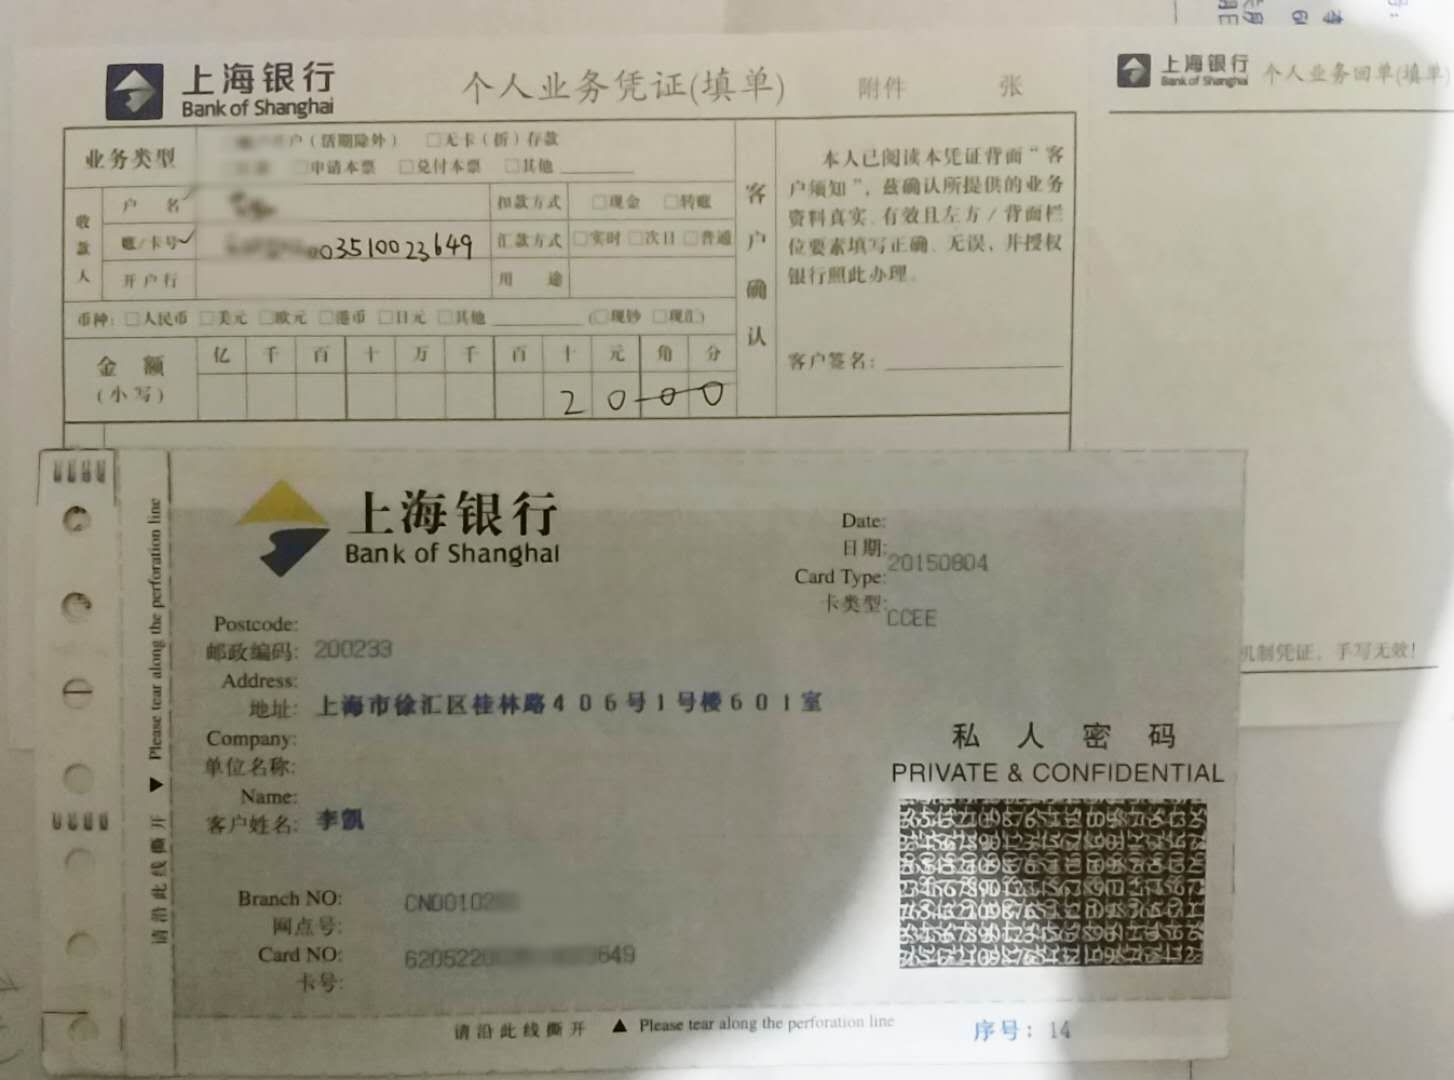 上海银行转账单